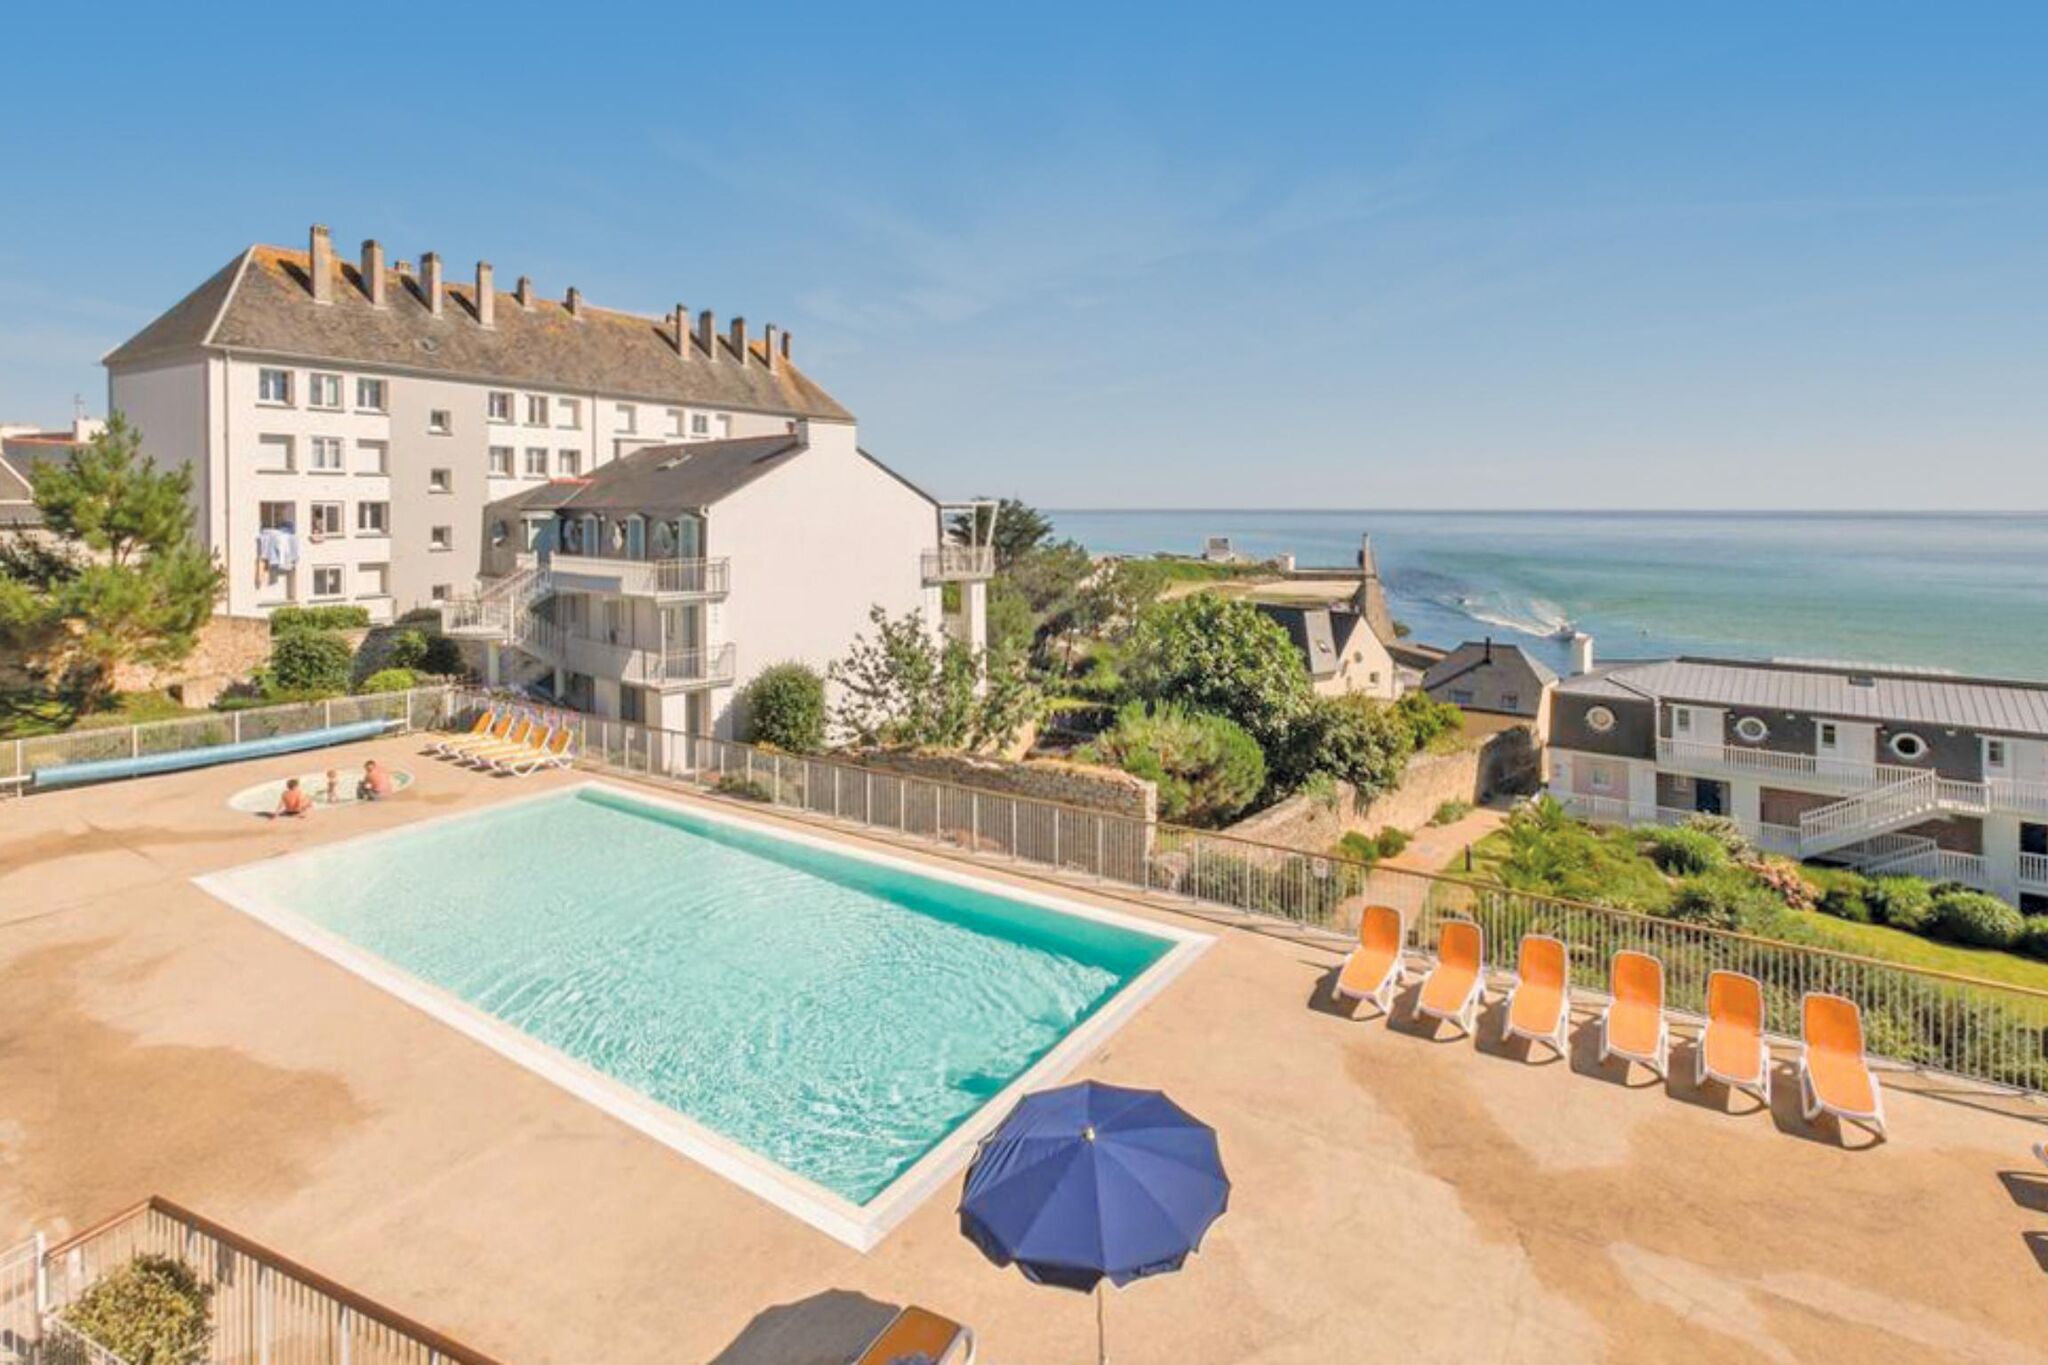 Appartement met zwembad en zeezicht in Zuidwest-Bretagne